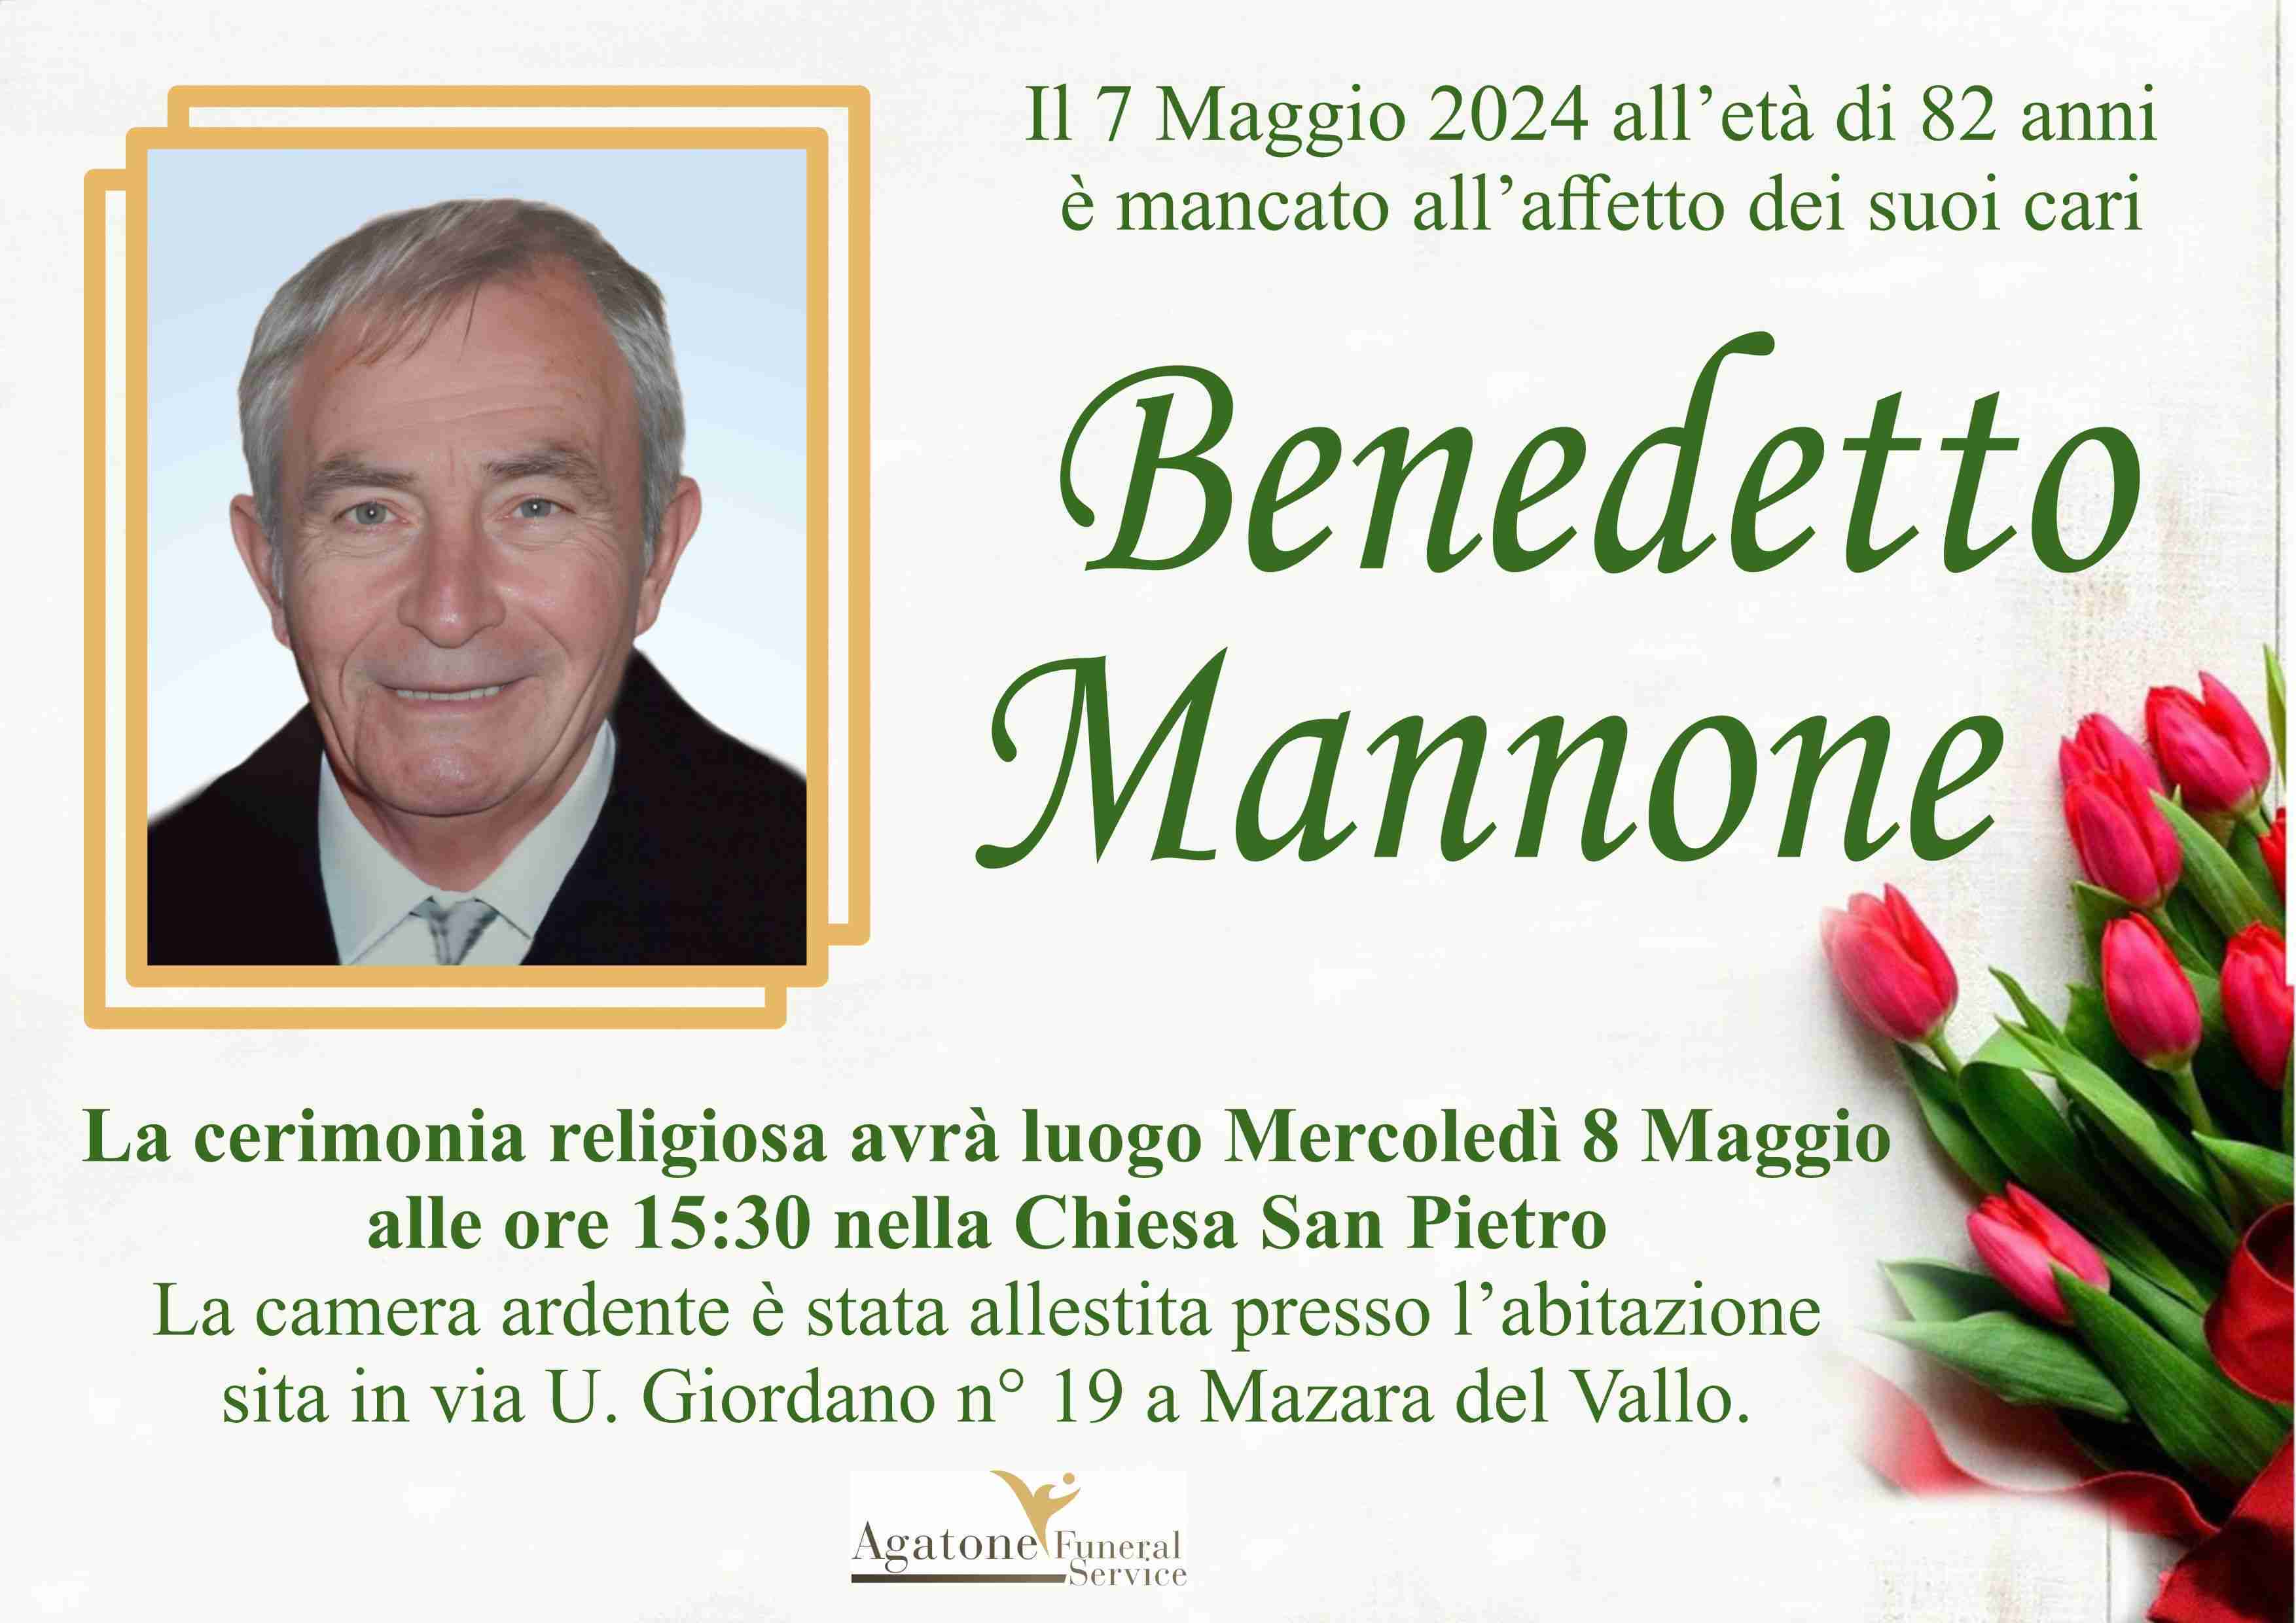 Benedetto Mannone